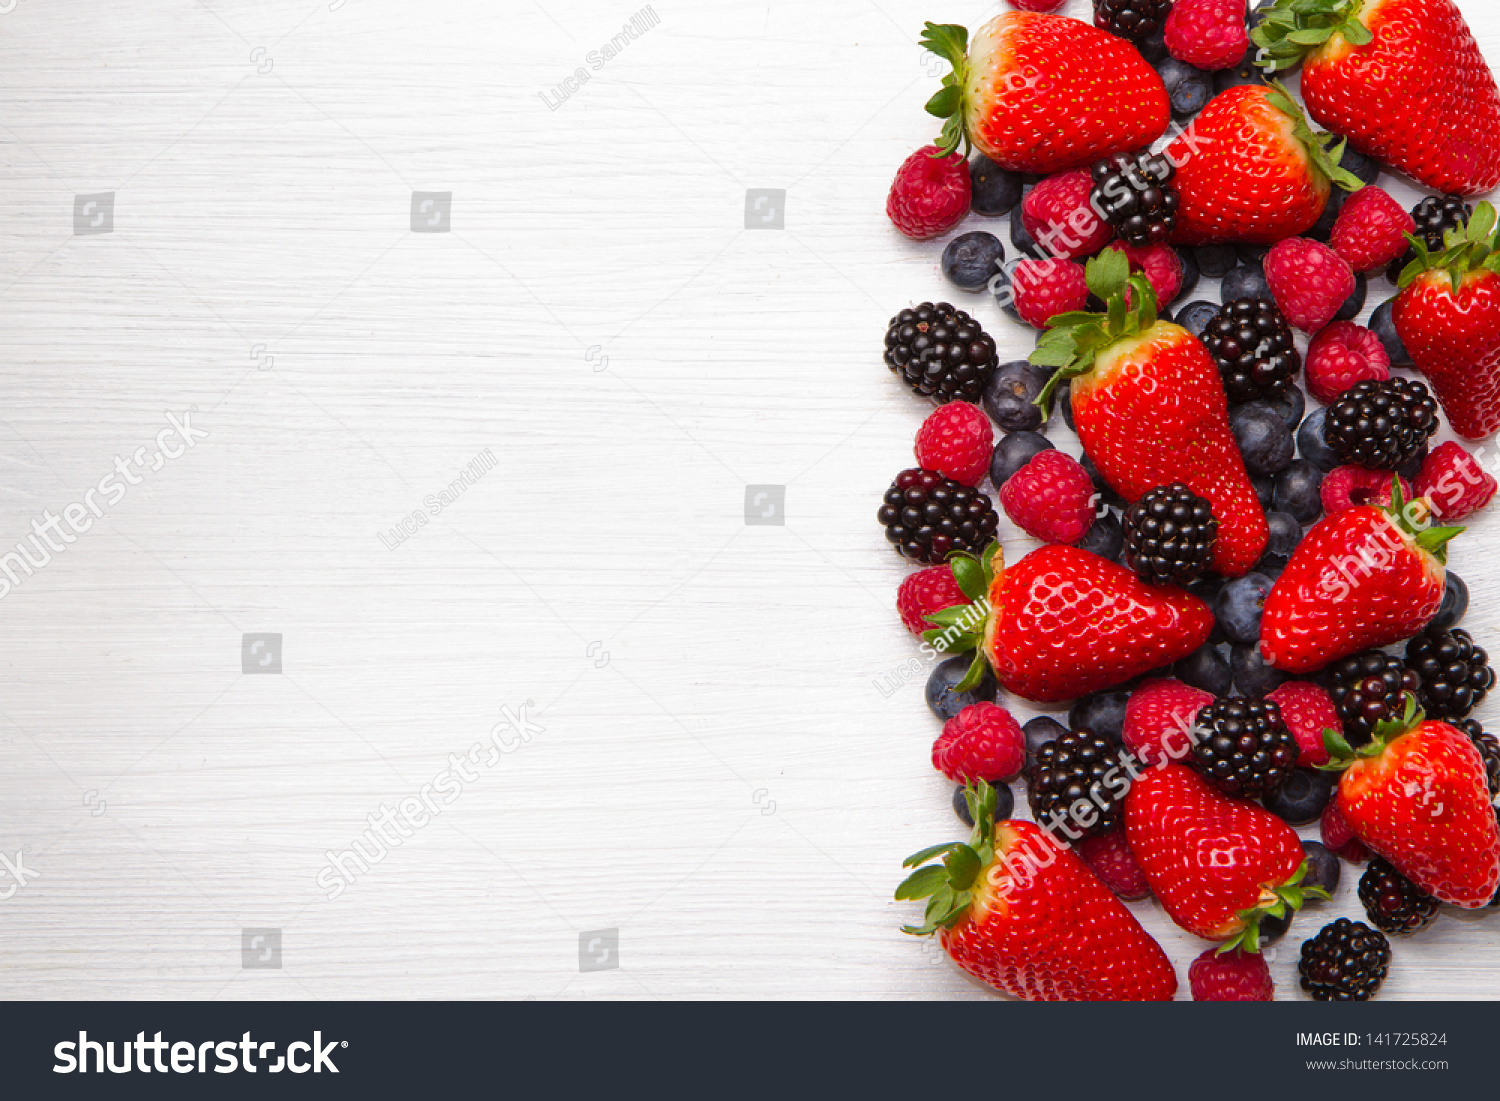 Strawberries blackberries blueberries Images, Stock Photos & Vectors |  Shutterstock